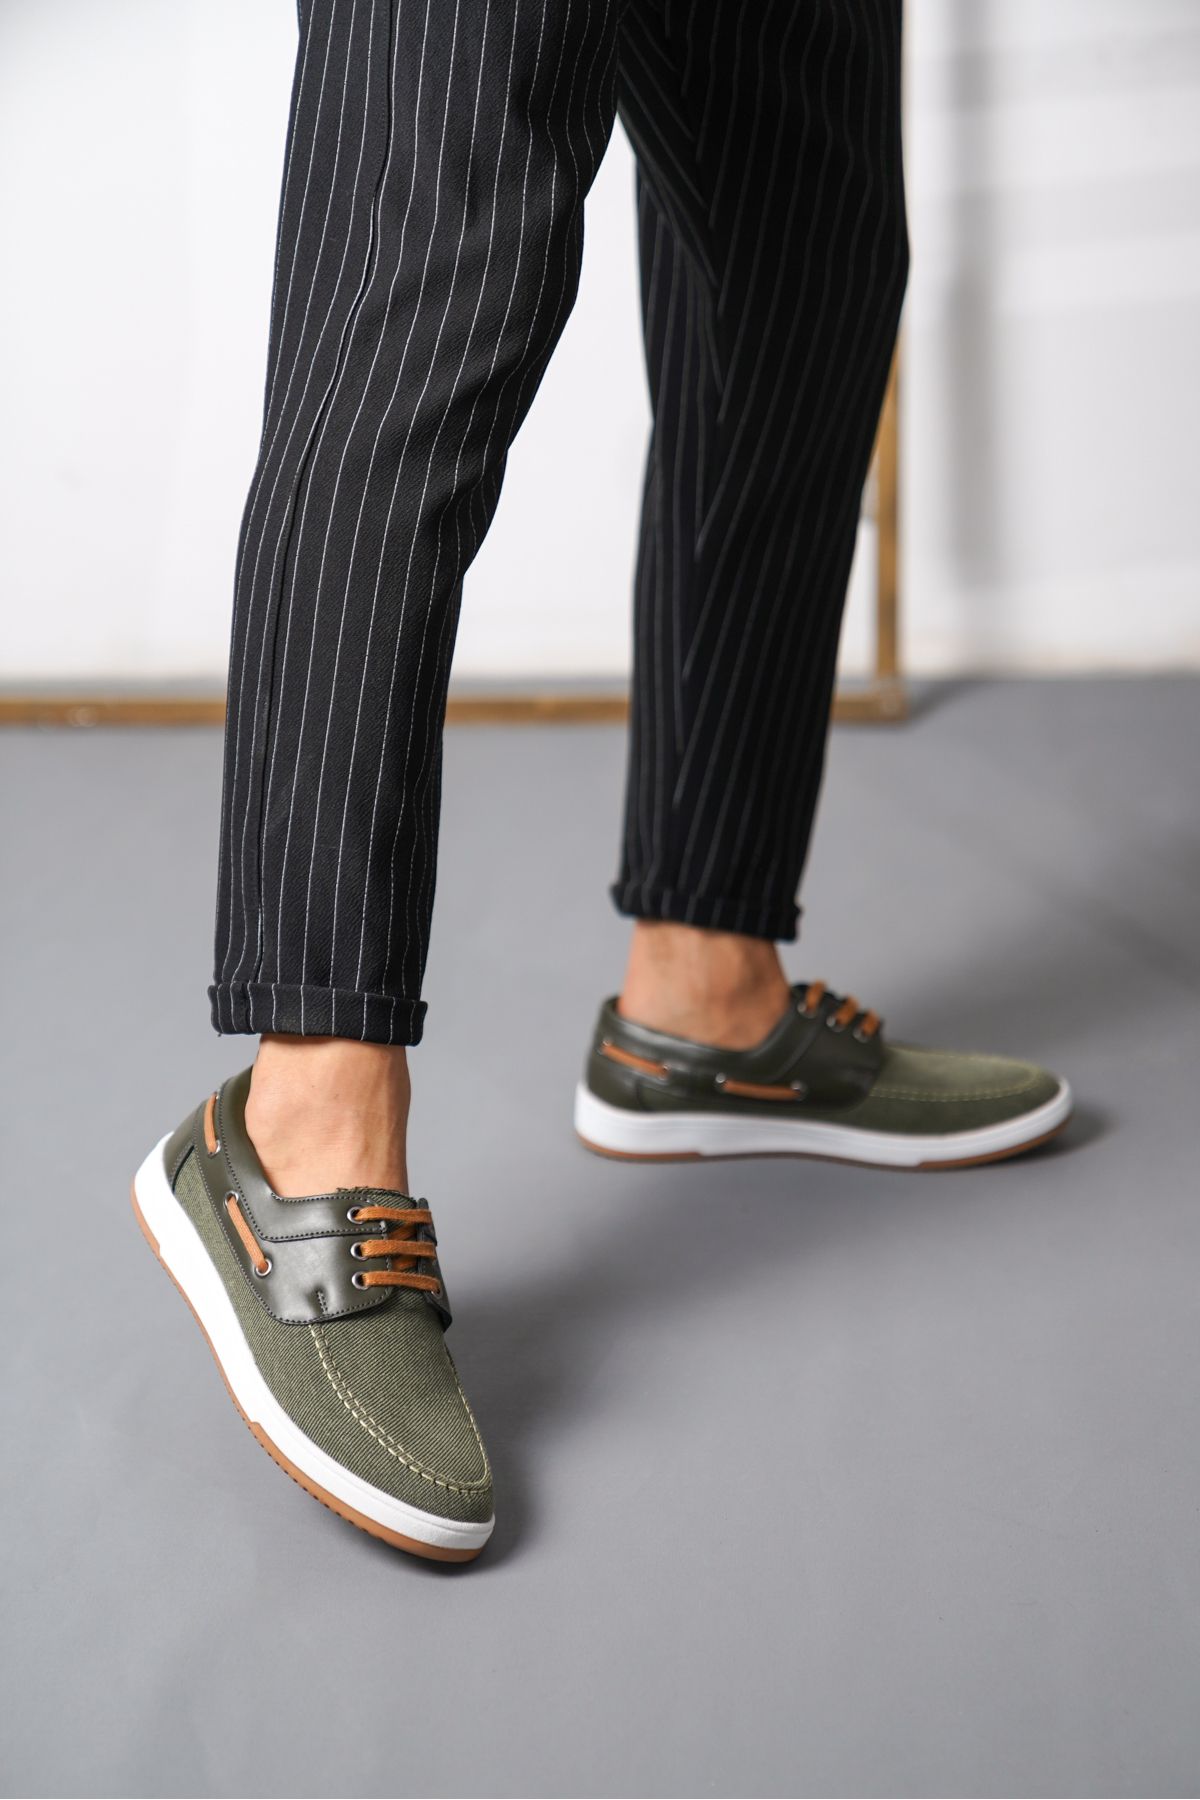 Daxtors Tokyo Günlük Ortopedik Terletmez Keten Garantili Erkek Klasik Ayakkabı